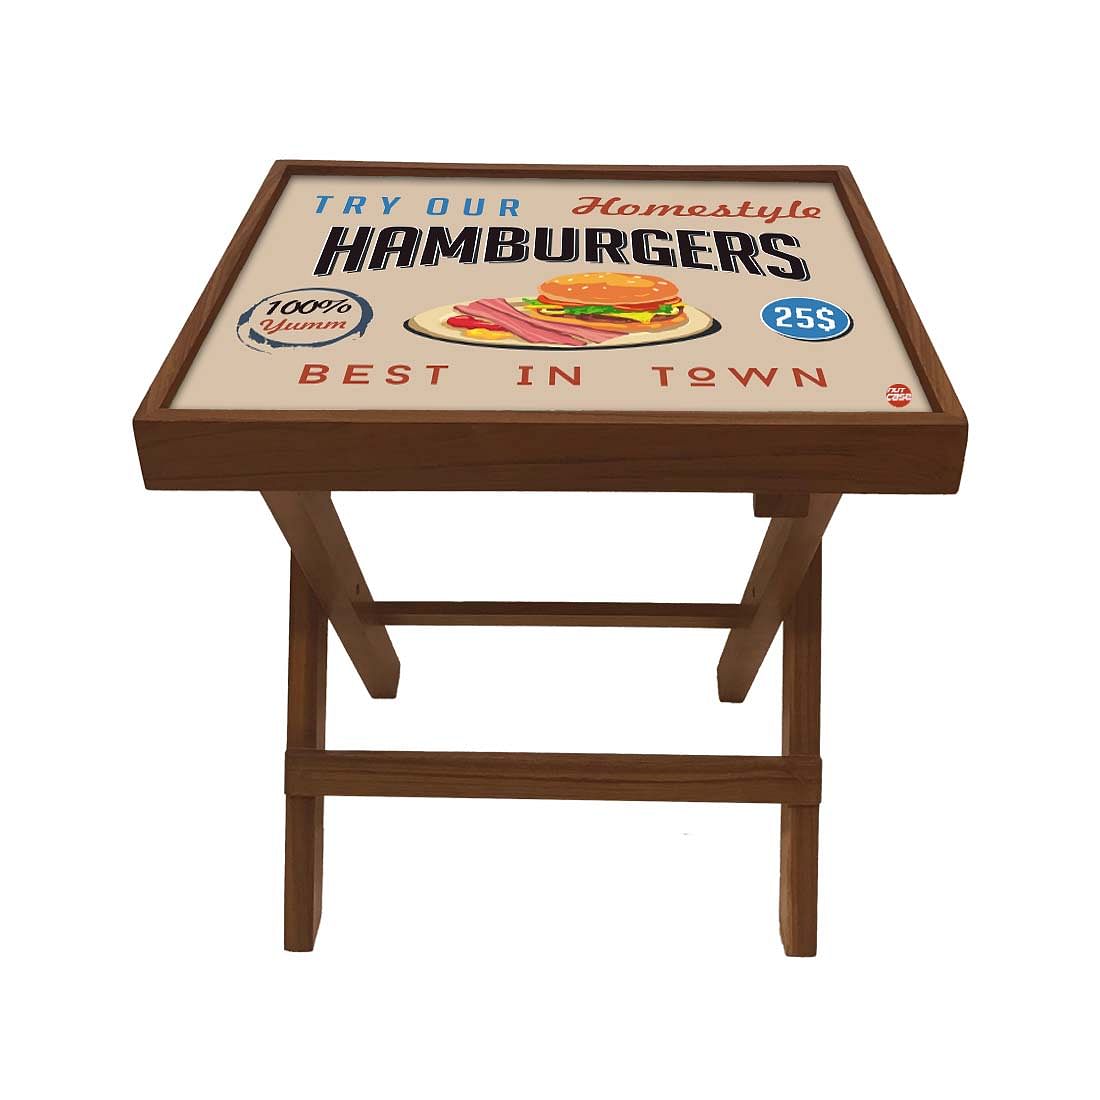 Folding Side Table - Teak Wood - Retro Diner Style Burgers Nutcase